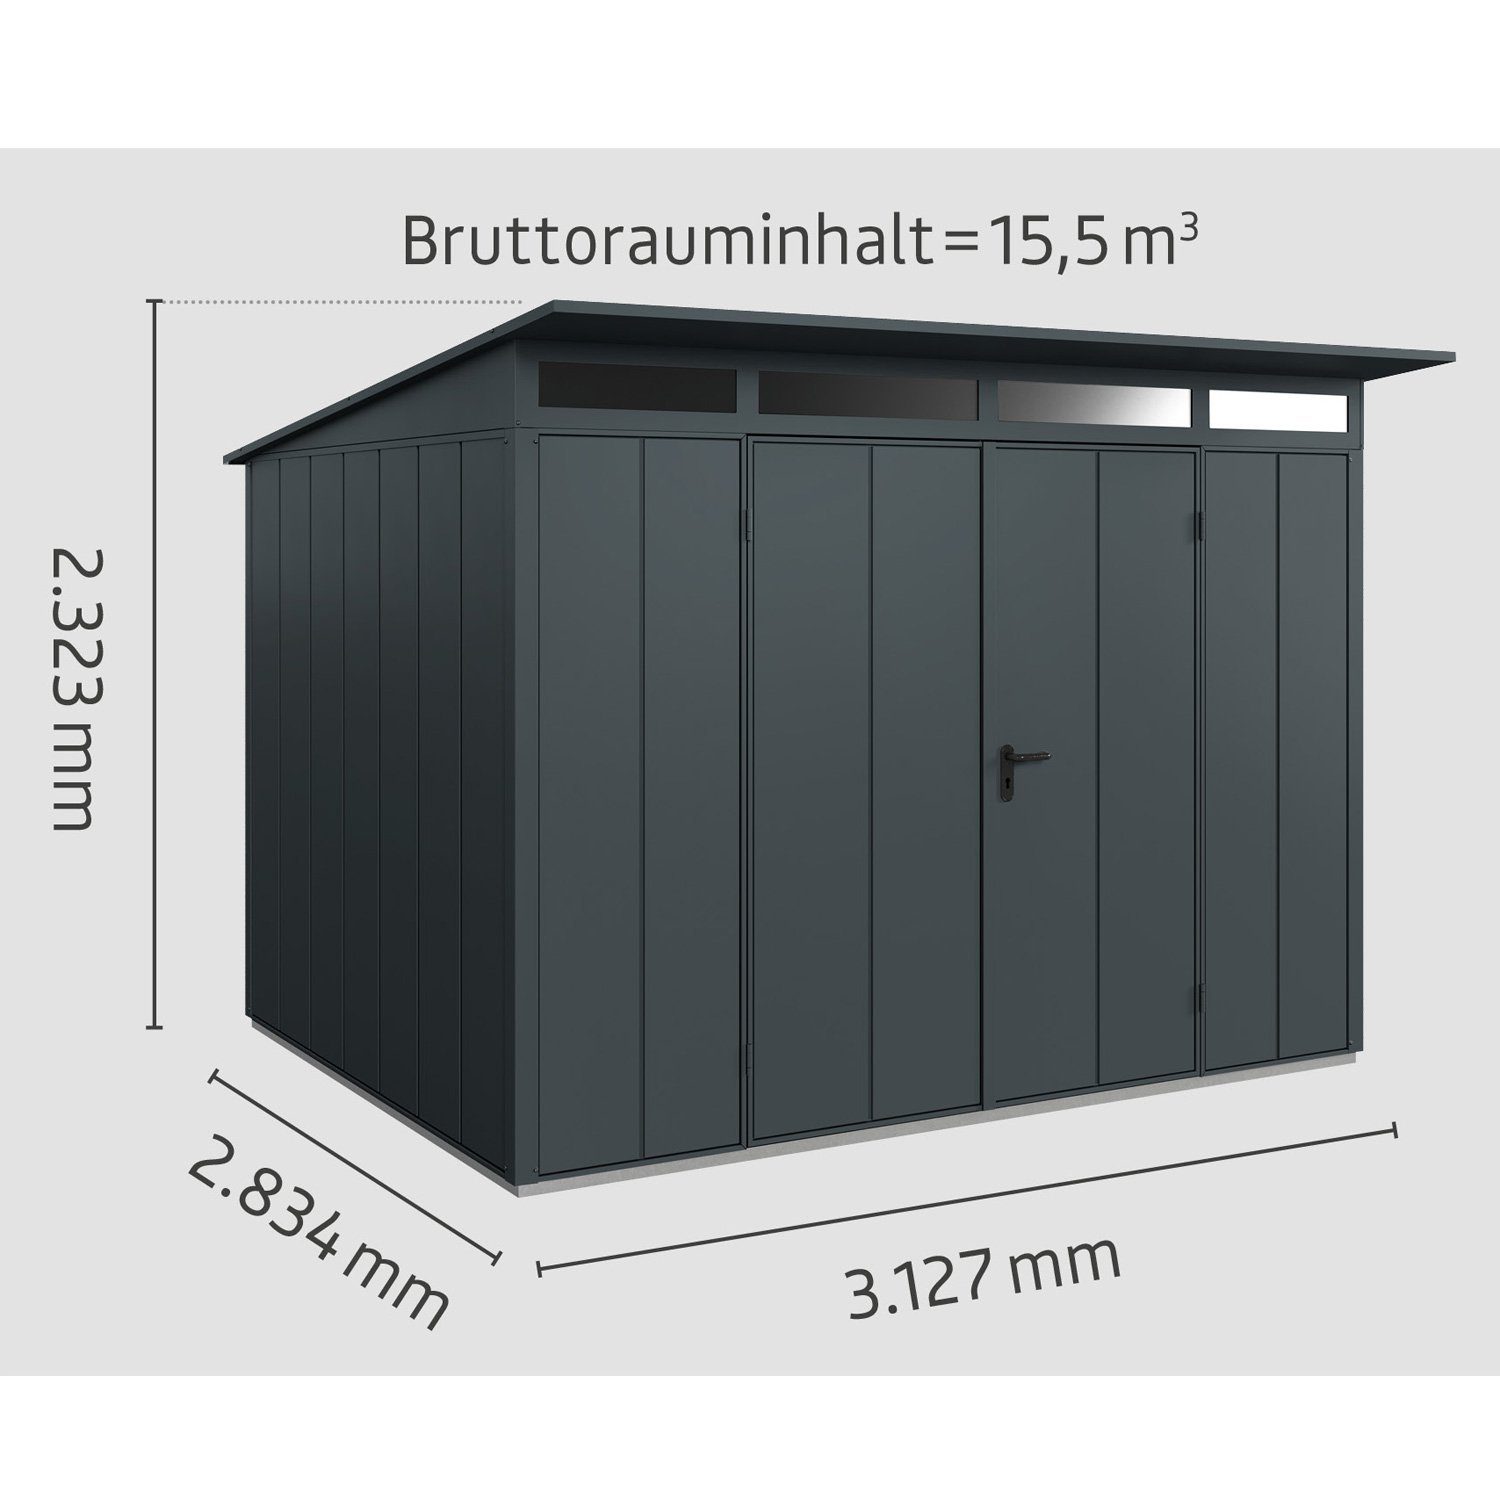 3, Hörmann Metall-Gerätehaus Typ Pultdach Gerätehaus Tür anthrazitgrau Ecostar mit 2-flügelige Elegant